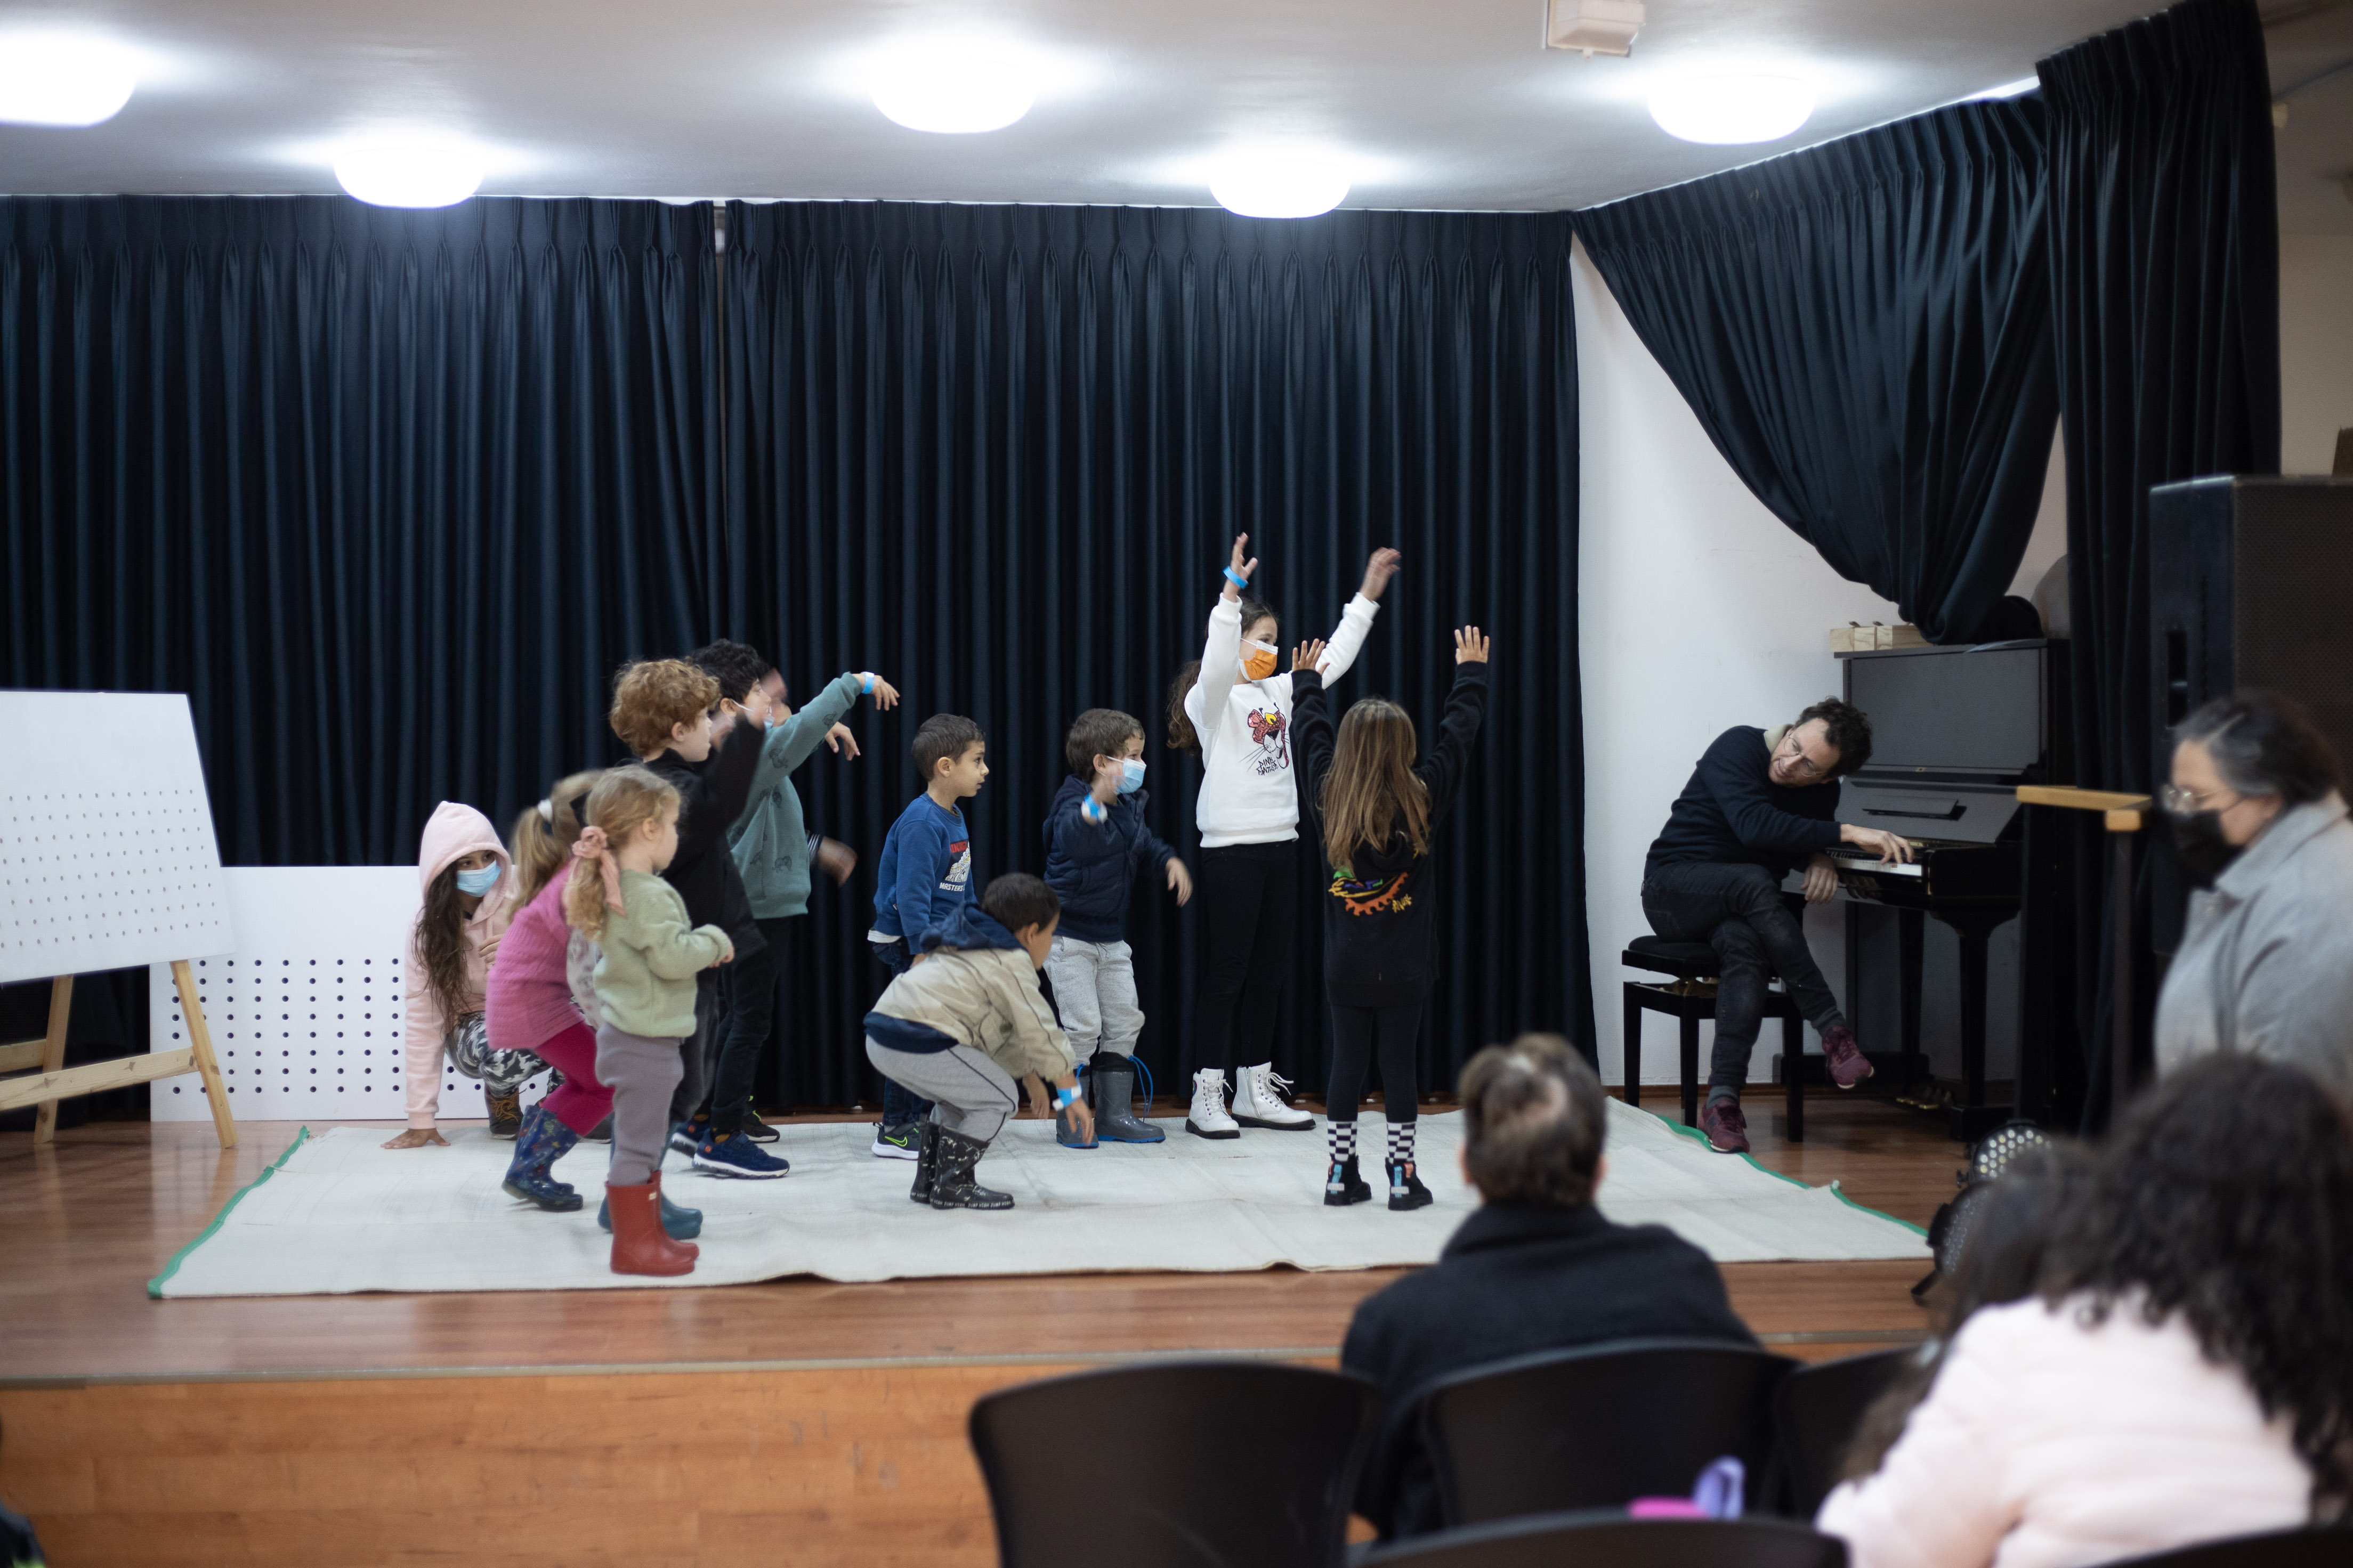 צילום מתוך סדנת ההלחנה בבית מאניה ובו ההורים הישובים בקהל מביטים בילדיהם על הבמה מגיבים למוסיקה אותה מנגן המדריך על הפסנתר